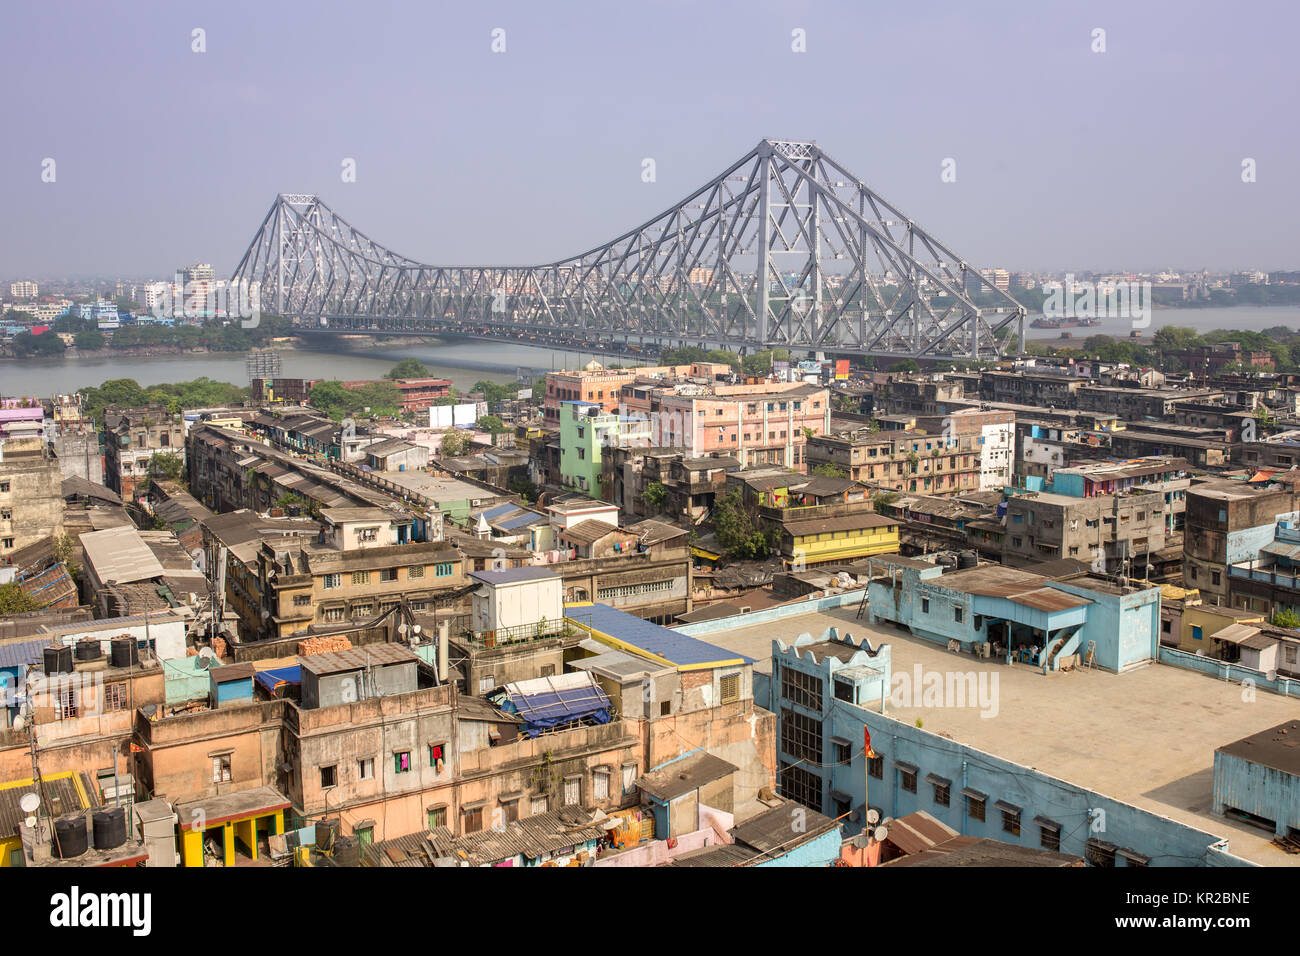 Howrah Bridge - l'historique pont en porte-à-faux sur le fleuve Hooghly pendant le jour à Kolkata, Inde. Haut Voir photo Banque D'Images